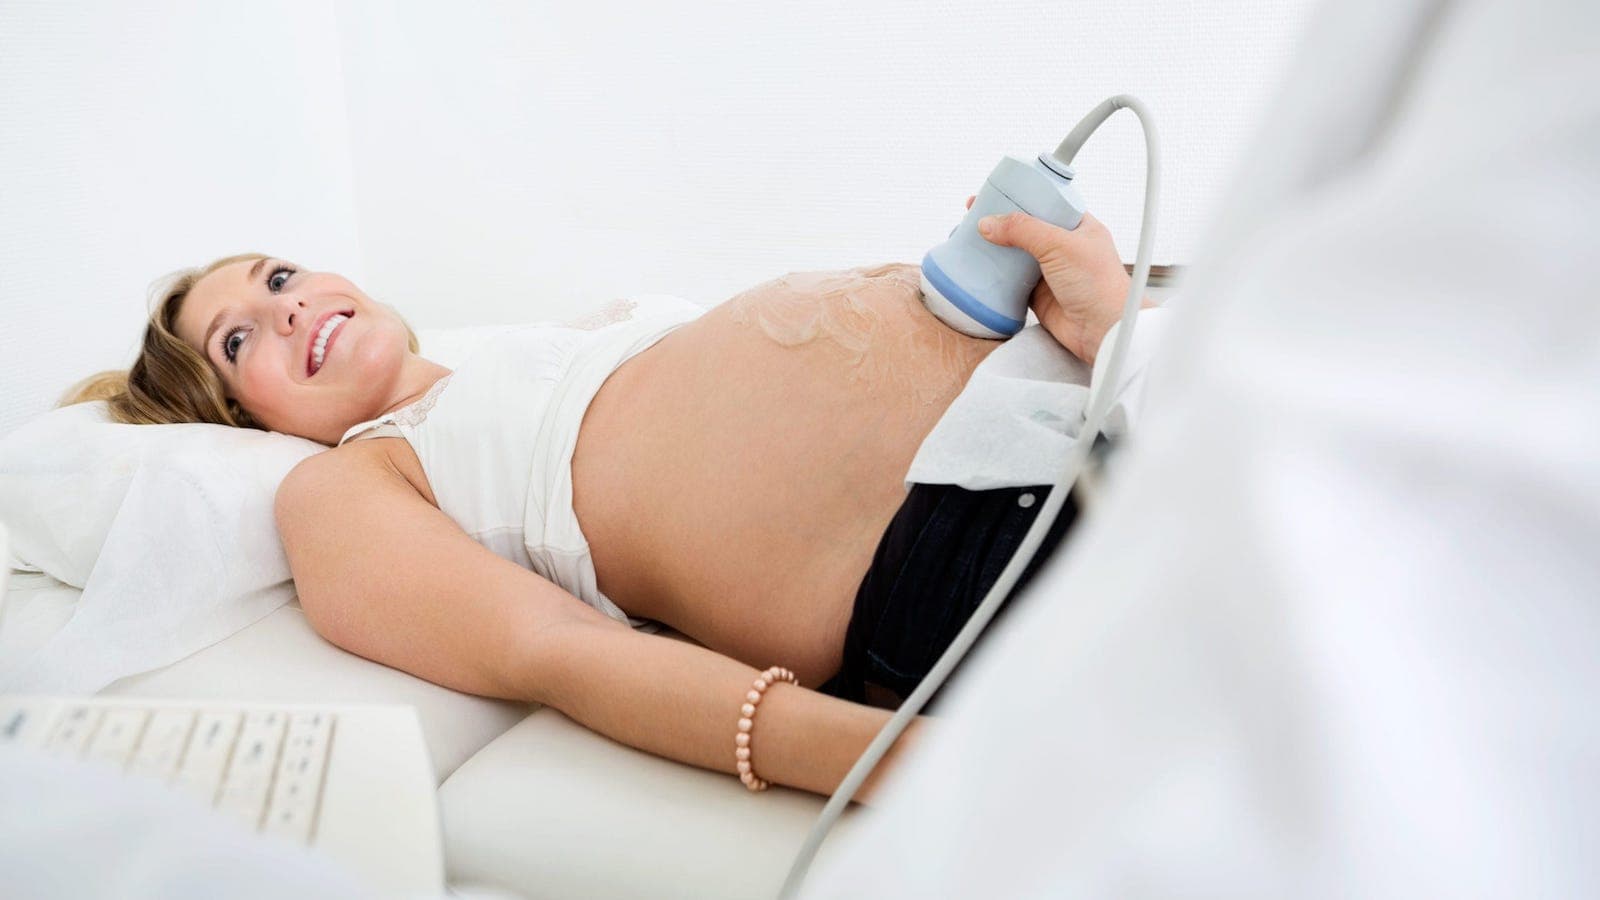 Terhességi ultrahang